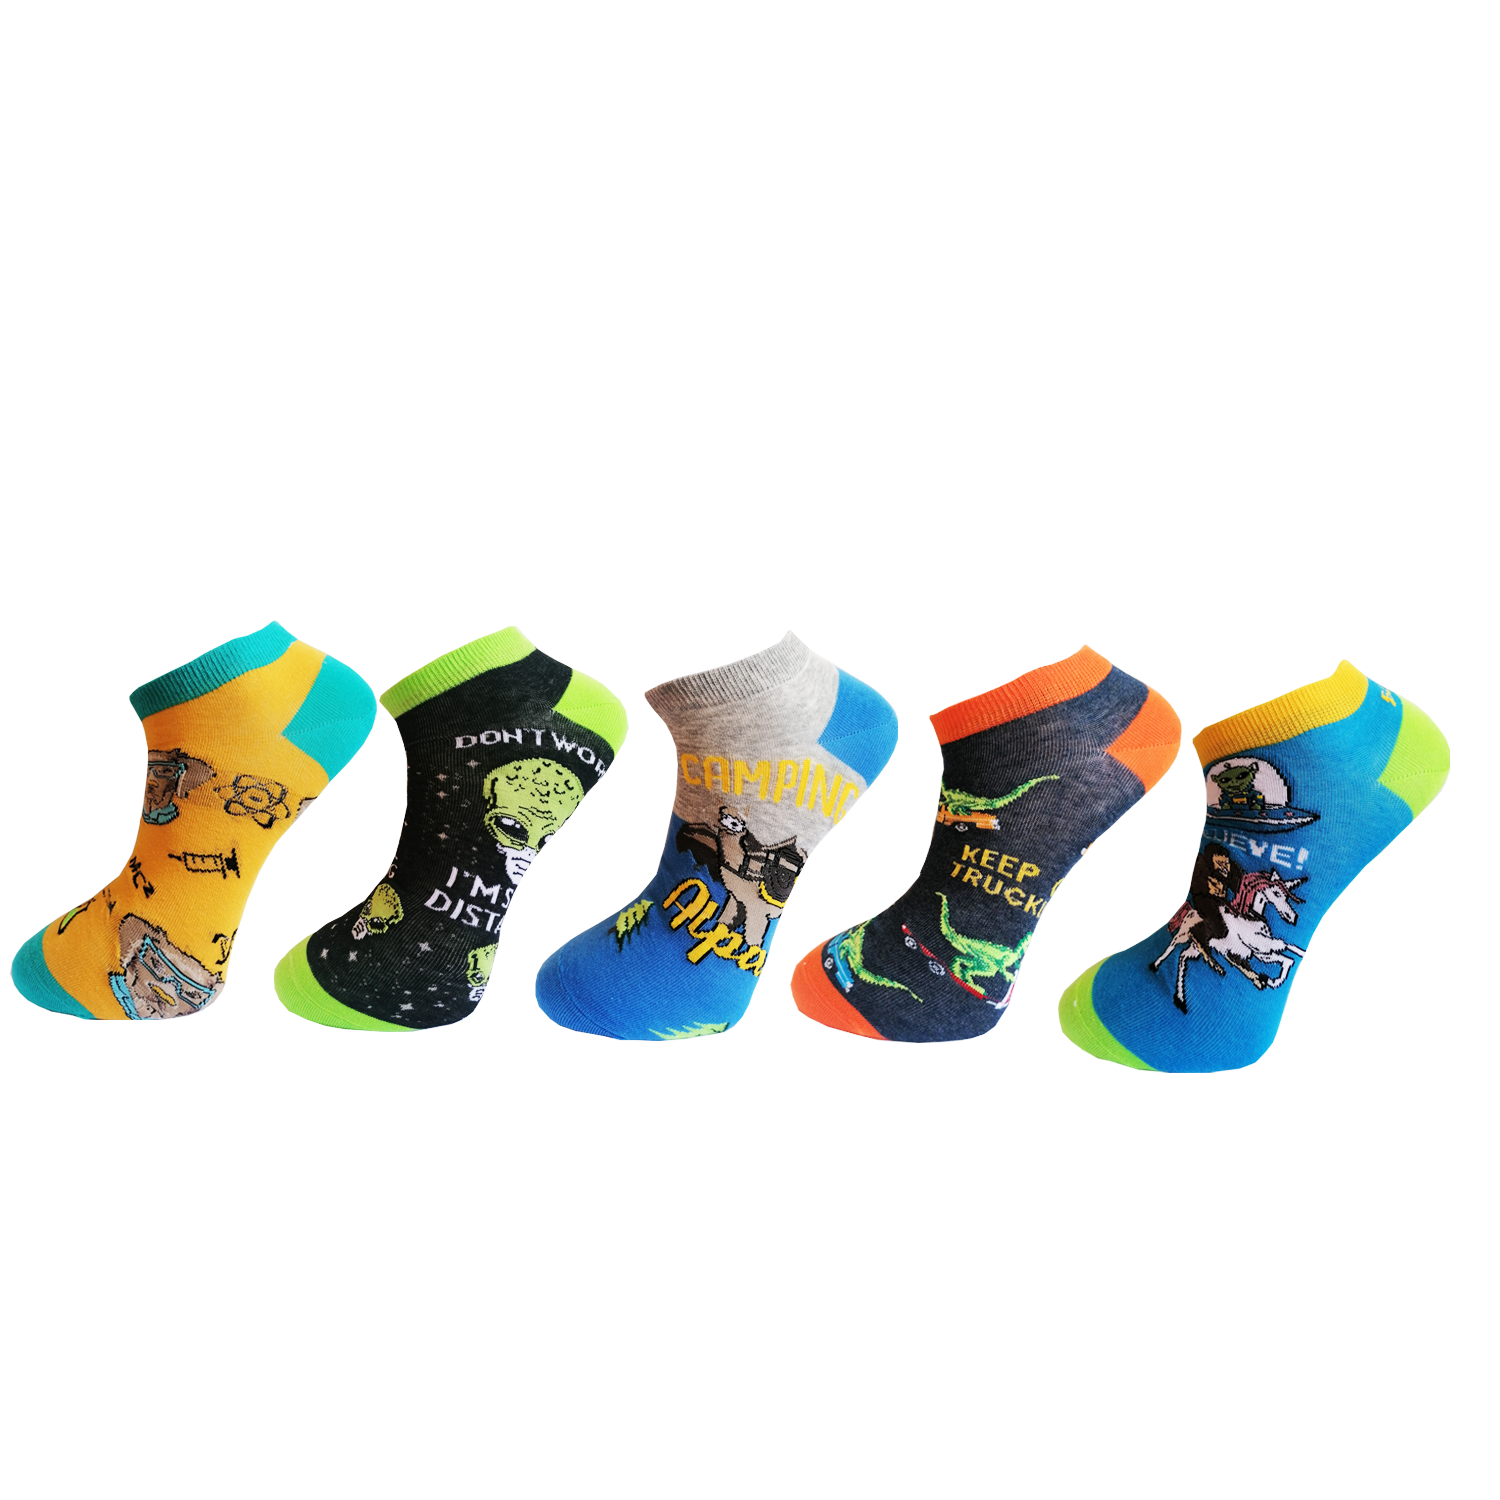 Pánské kotníkové ponožky Aura.Via - FDC8350, mix barev Barva: Mix barev, Velikost: 43-46